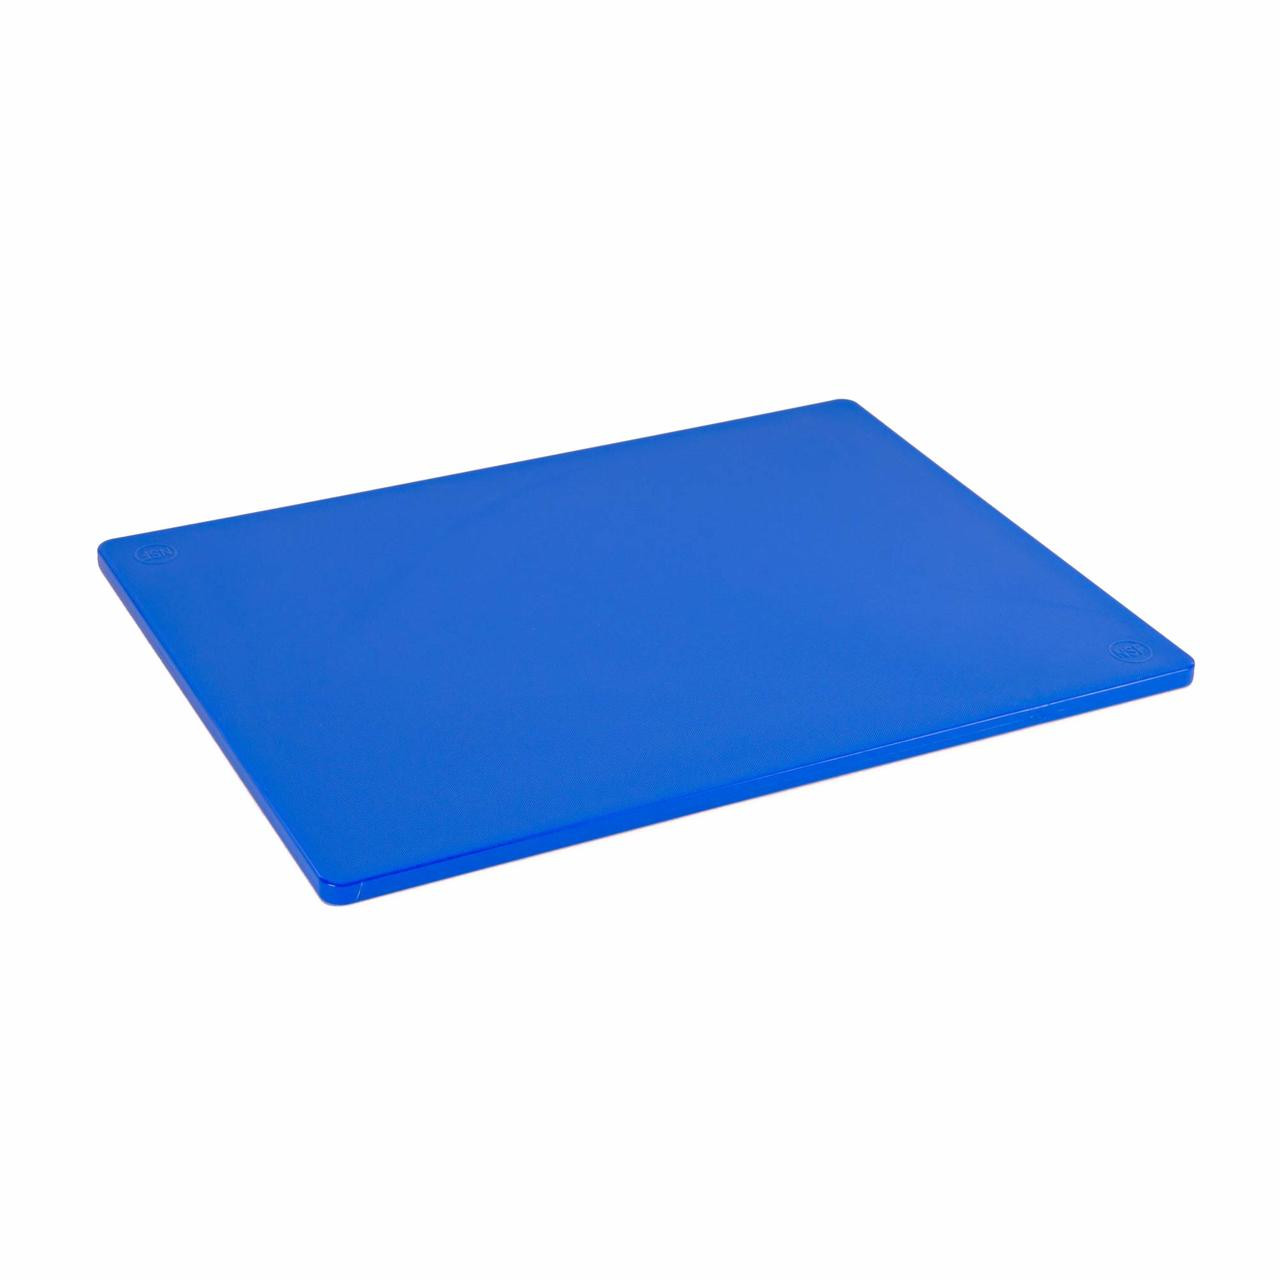 12 x 18 Economy Blue Poly Cutting Board